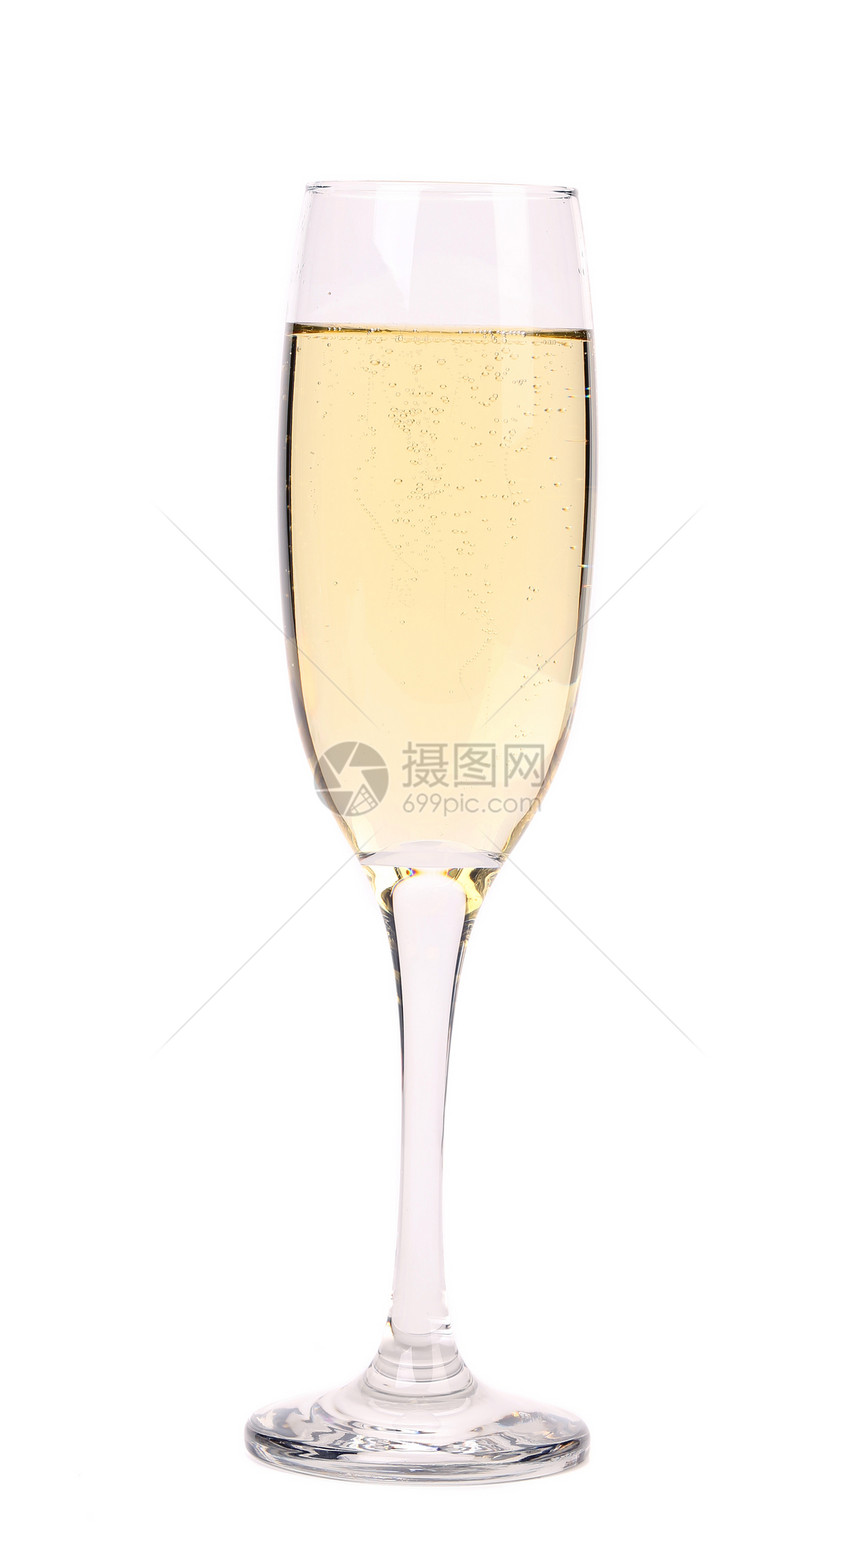 香槟杯水晶漩涡高脚杯饮料酒厂生活器皿派对庆典酒精图片